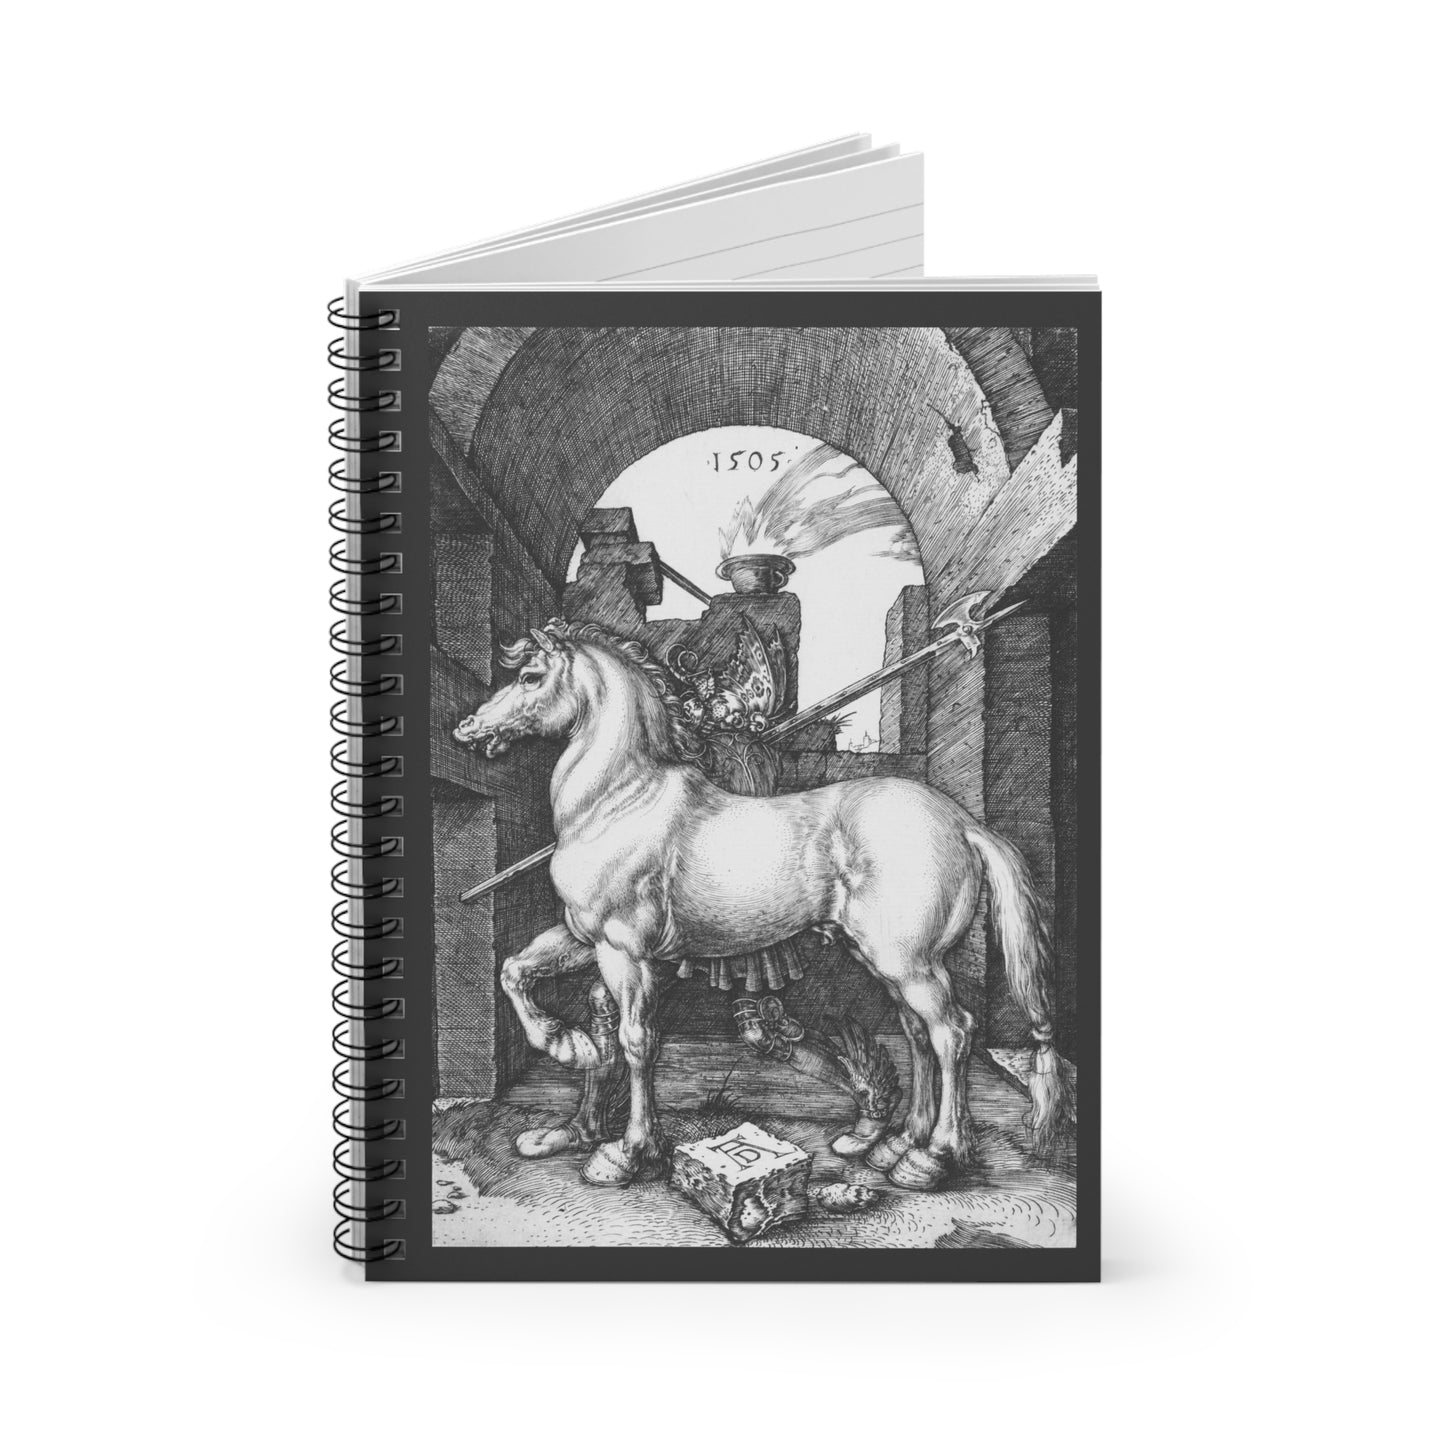 Albrecht Durer 1505 Engraving Spiral Notebook - Ruled Line